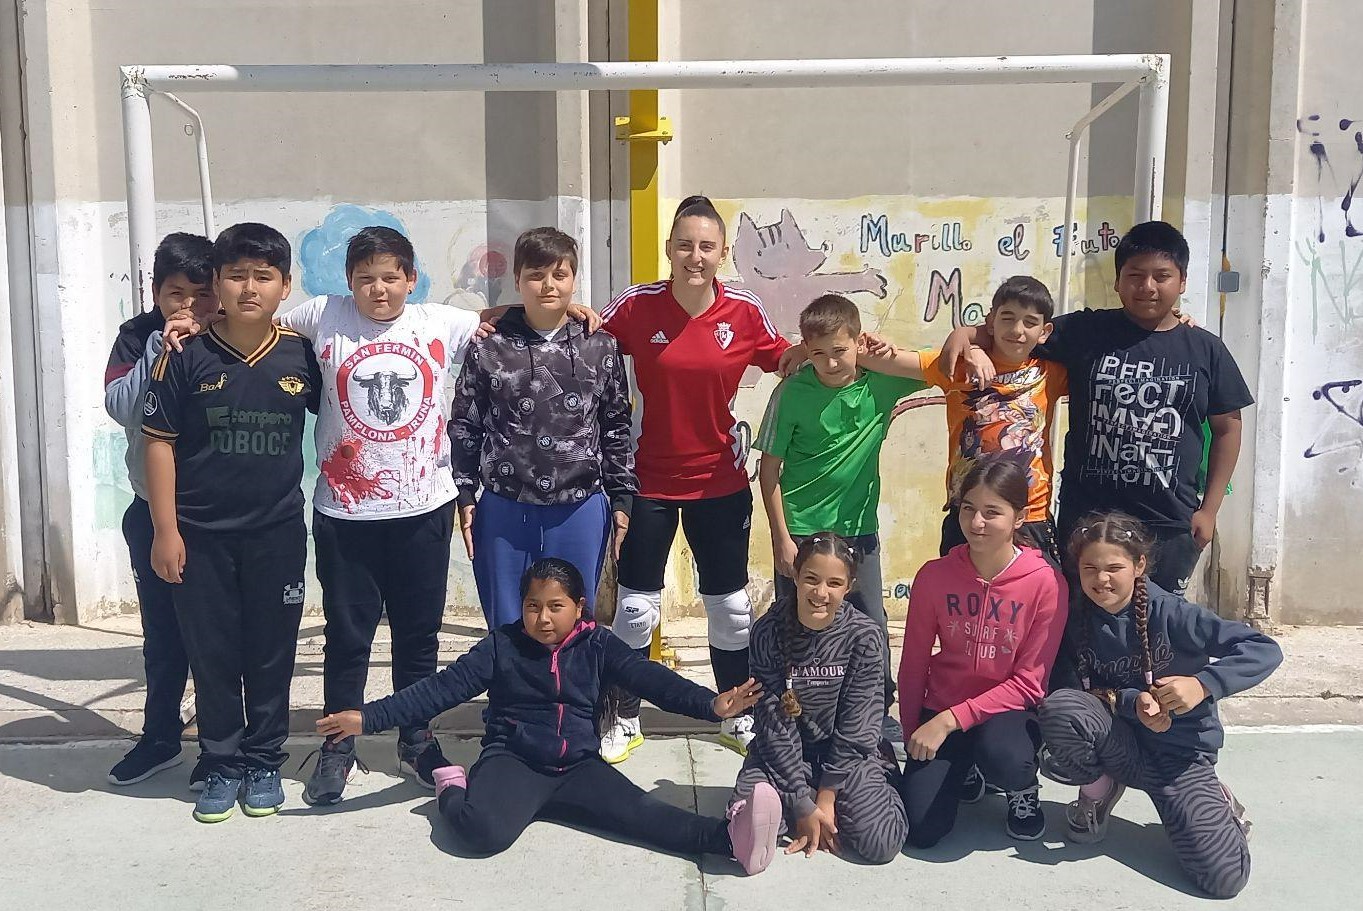 La futbolista Ana Etayo visita la escuela de Murillo el Fruto